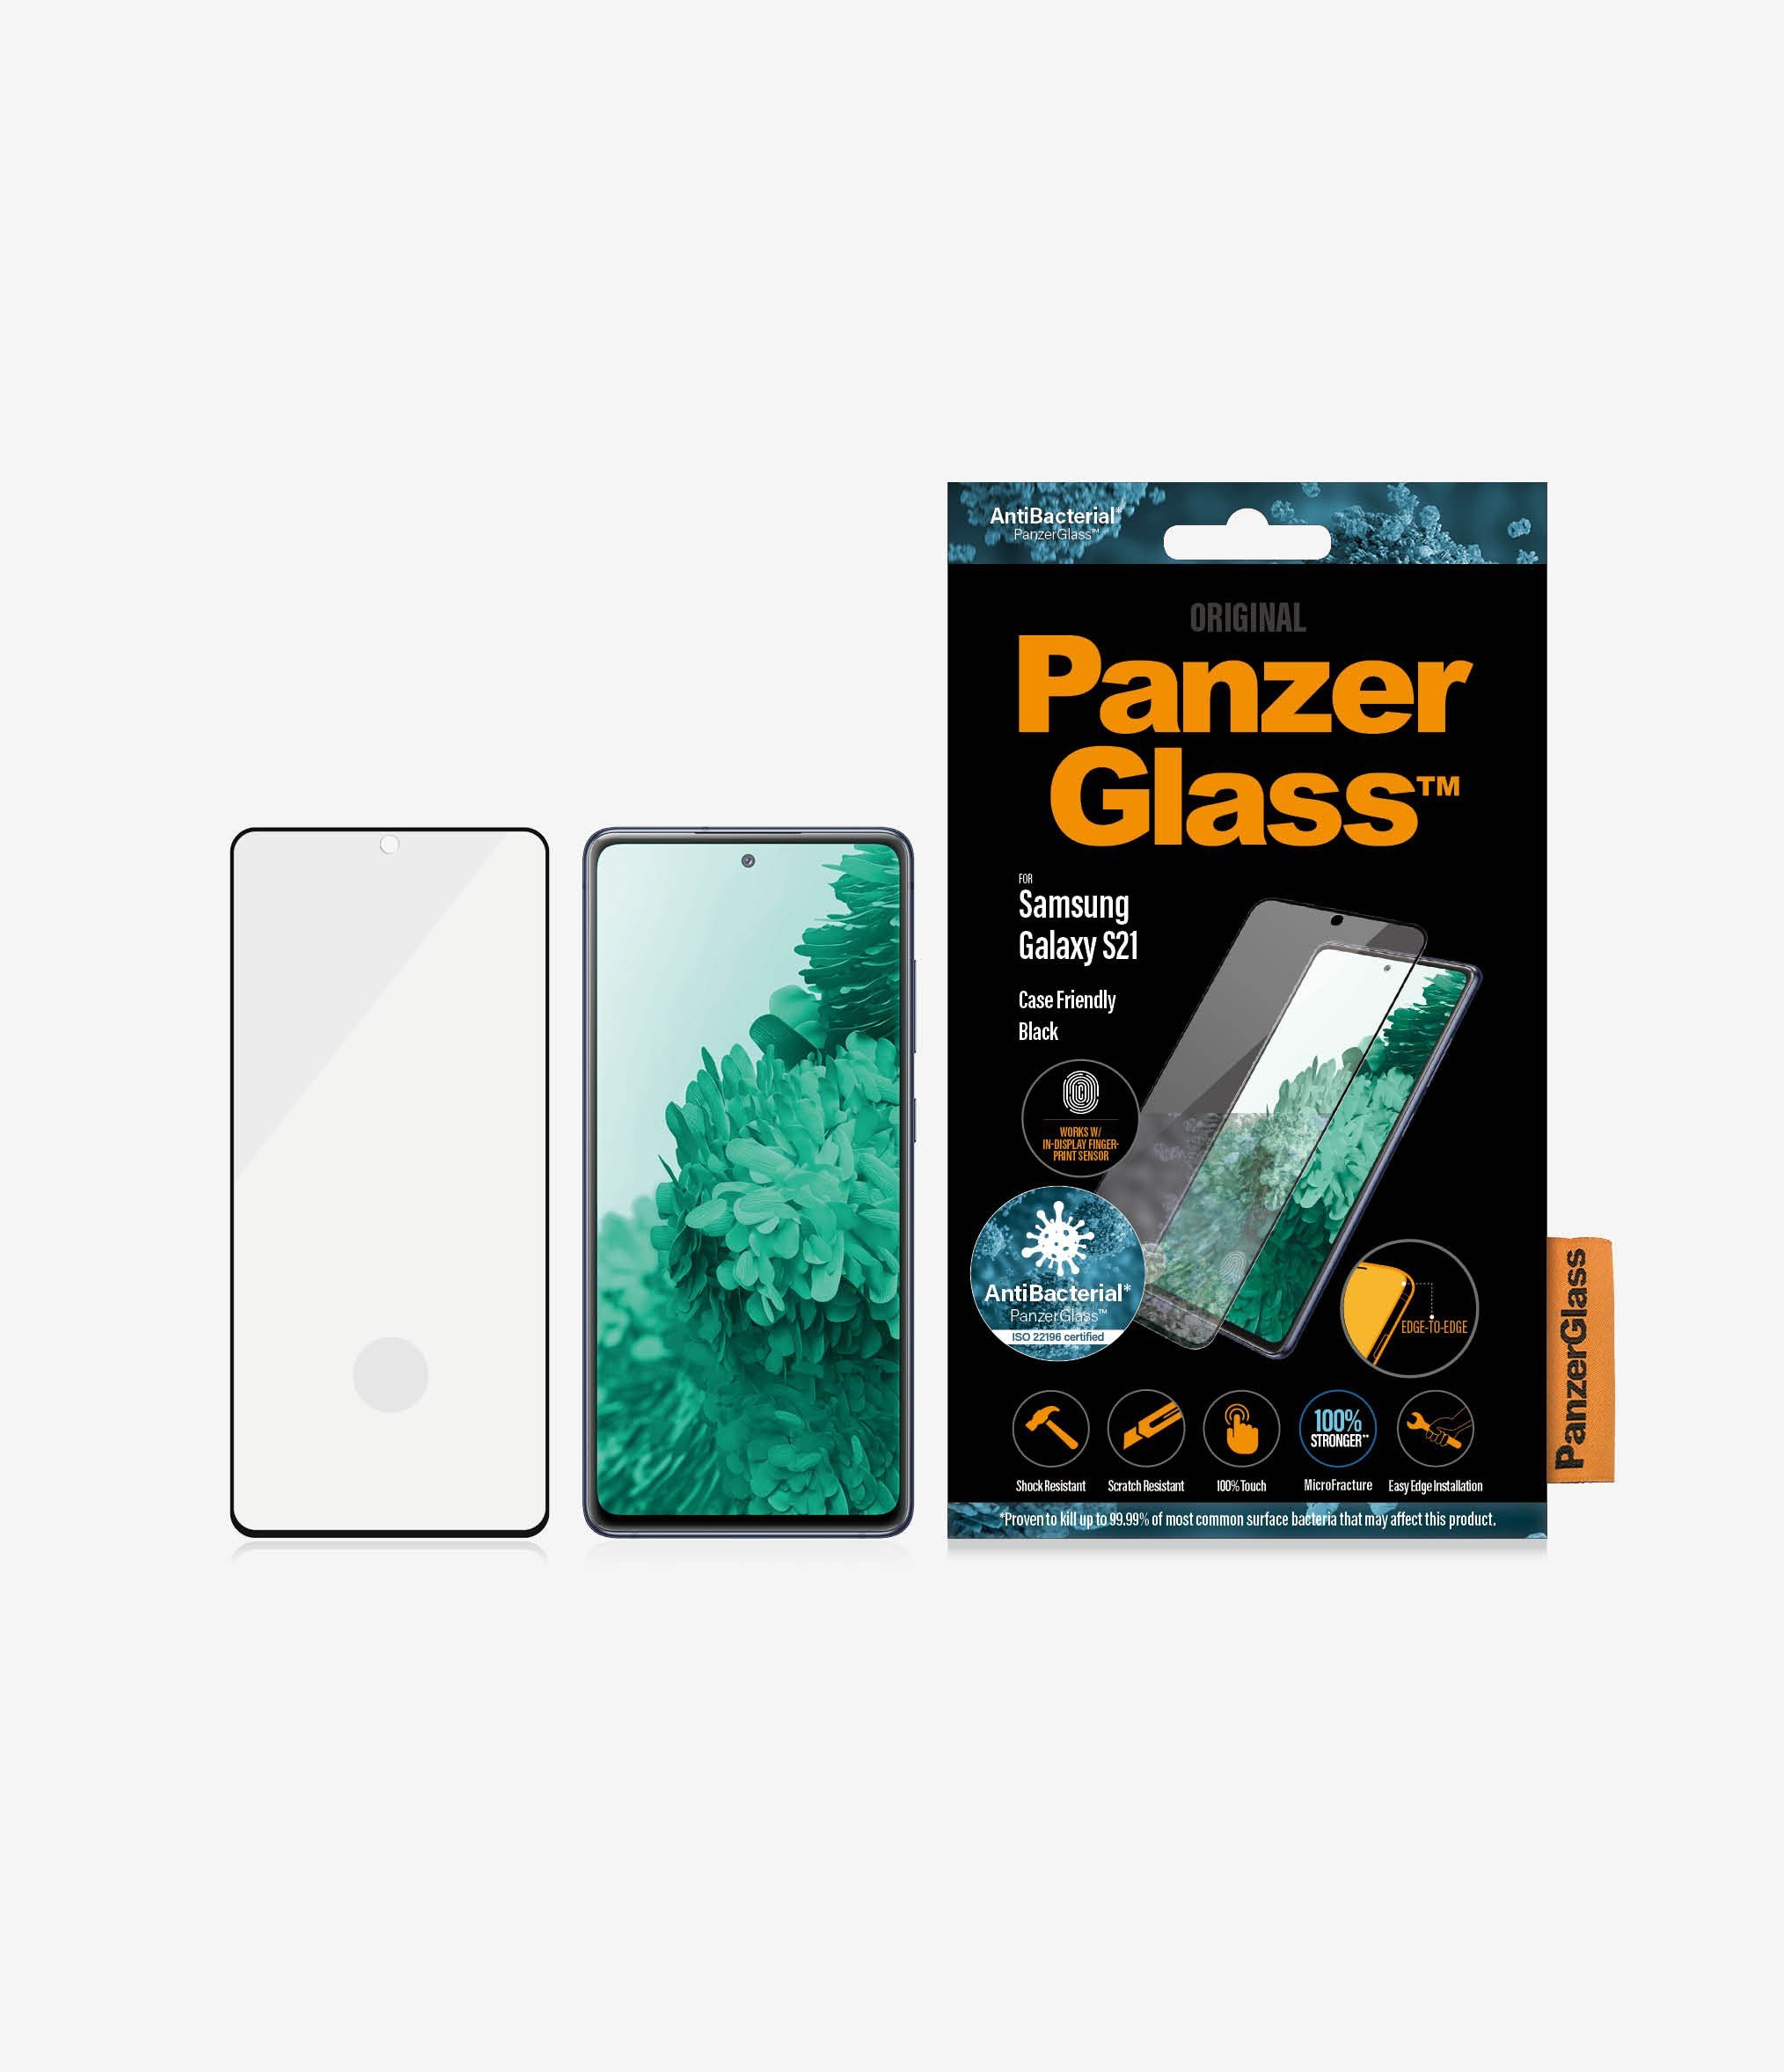 Szkło hartowane PanzerGlass E2E Microfracture do Samsung S21 G991 Case Friendly Finger Print AntiBacterial czarny/black widok od przodu na szkło telefon i opakowanie